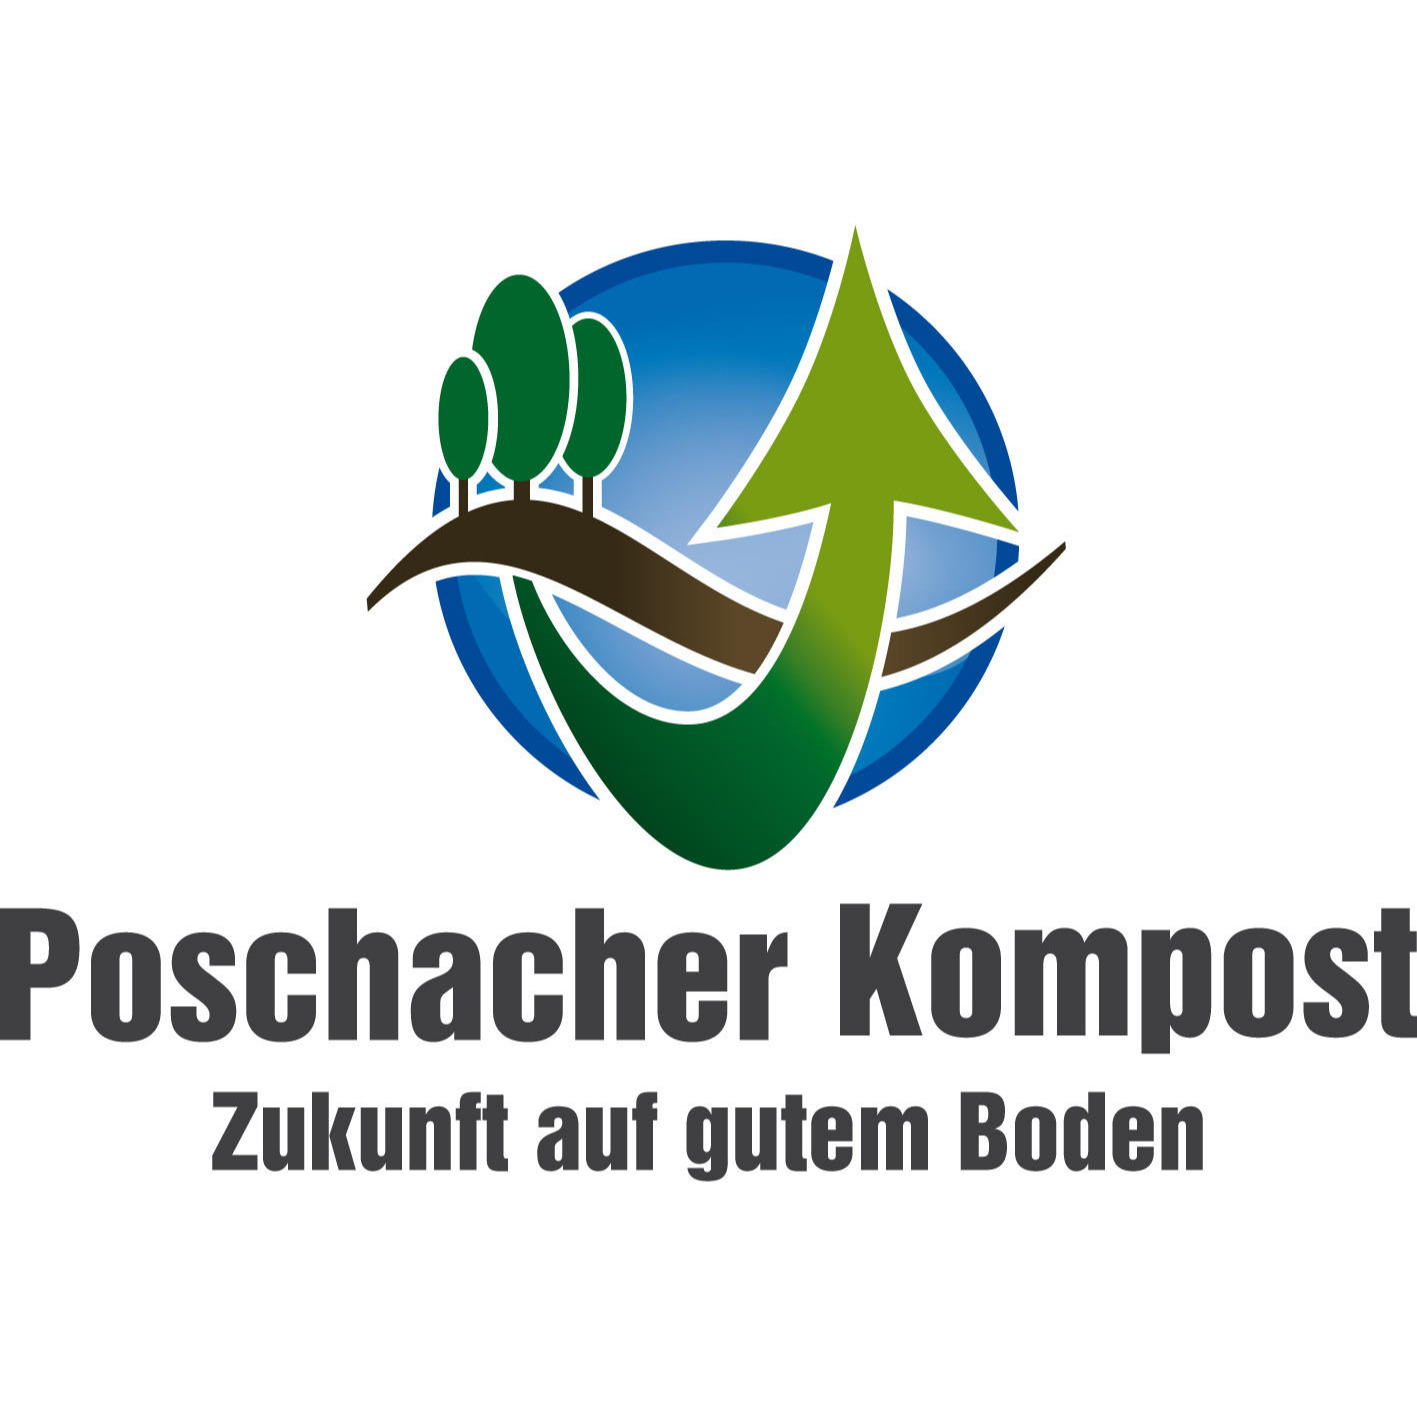 Poschacher Kompost